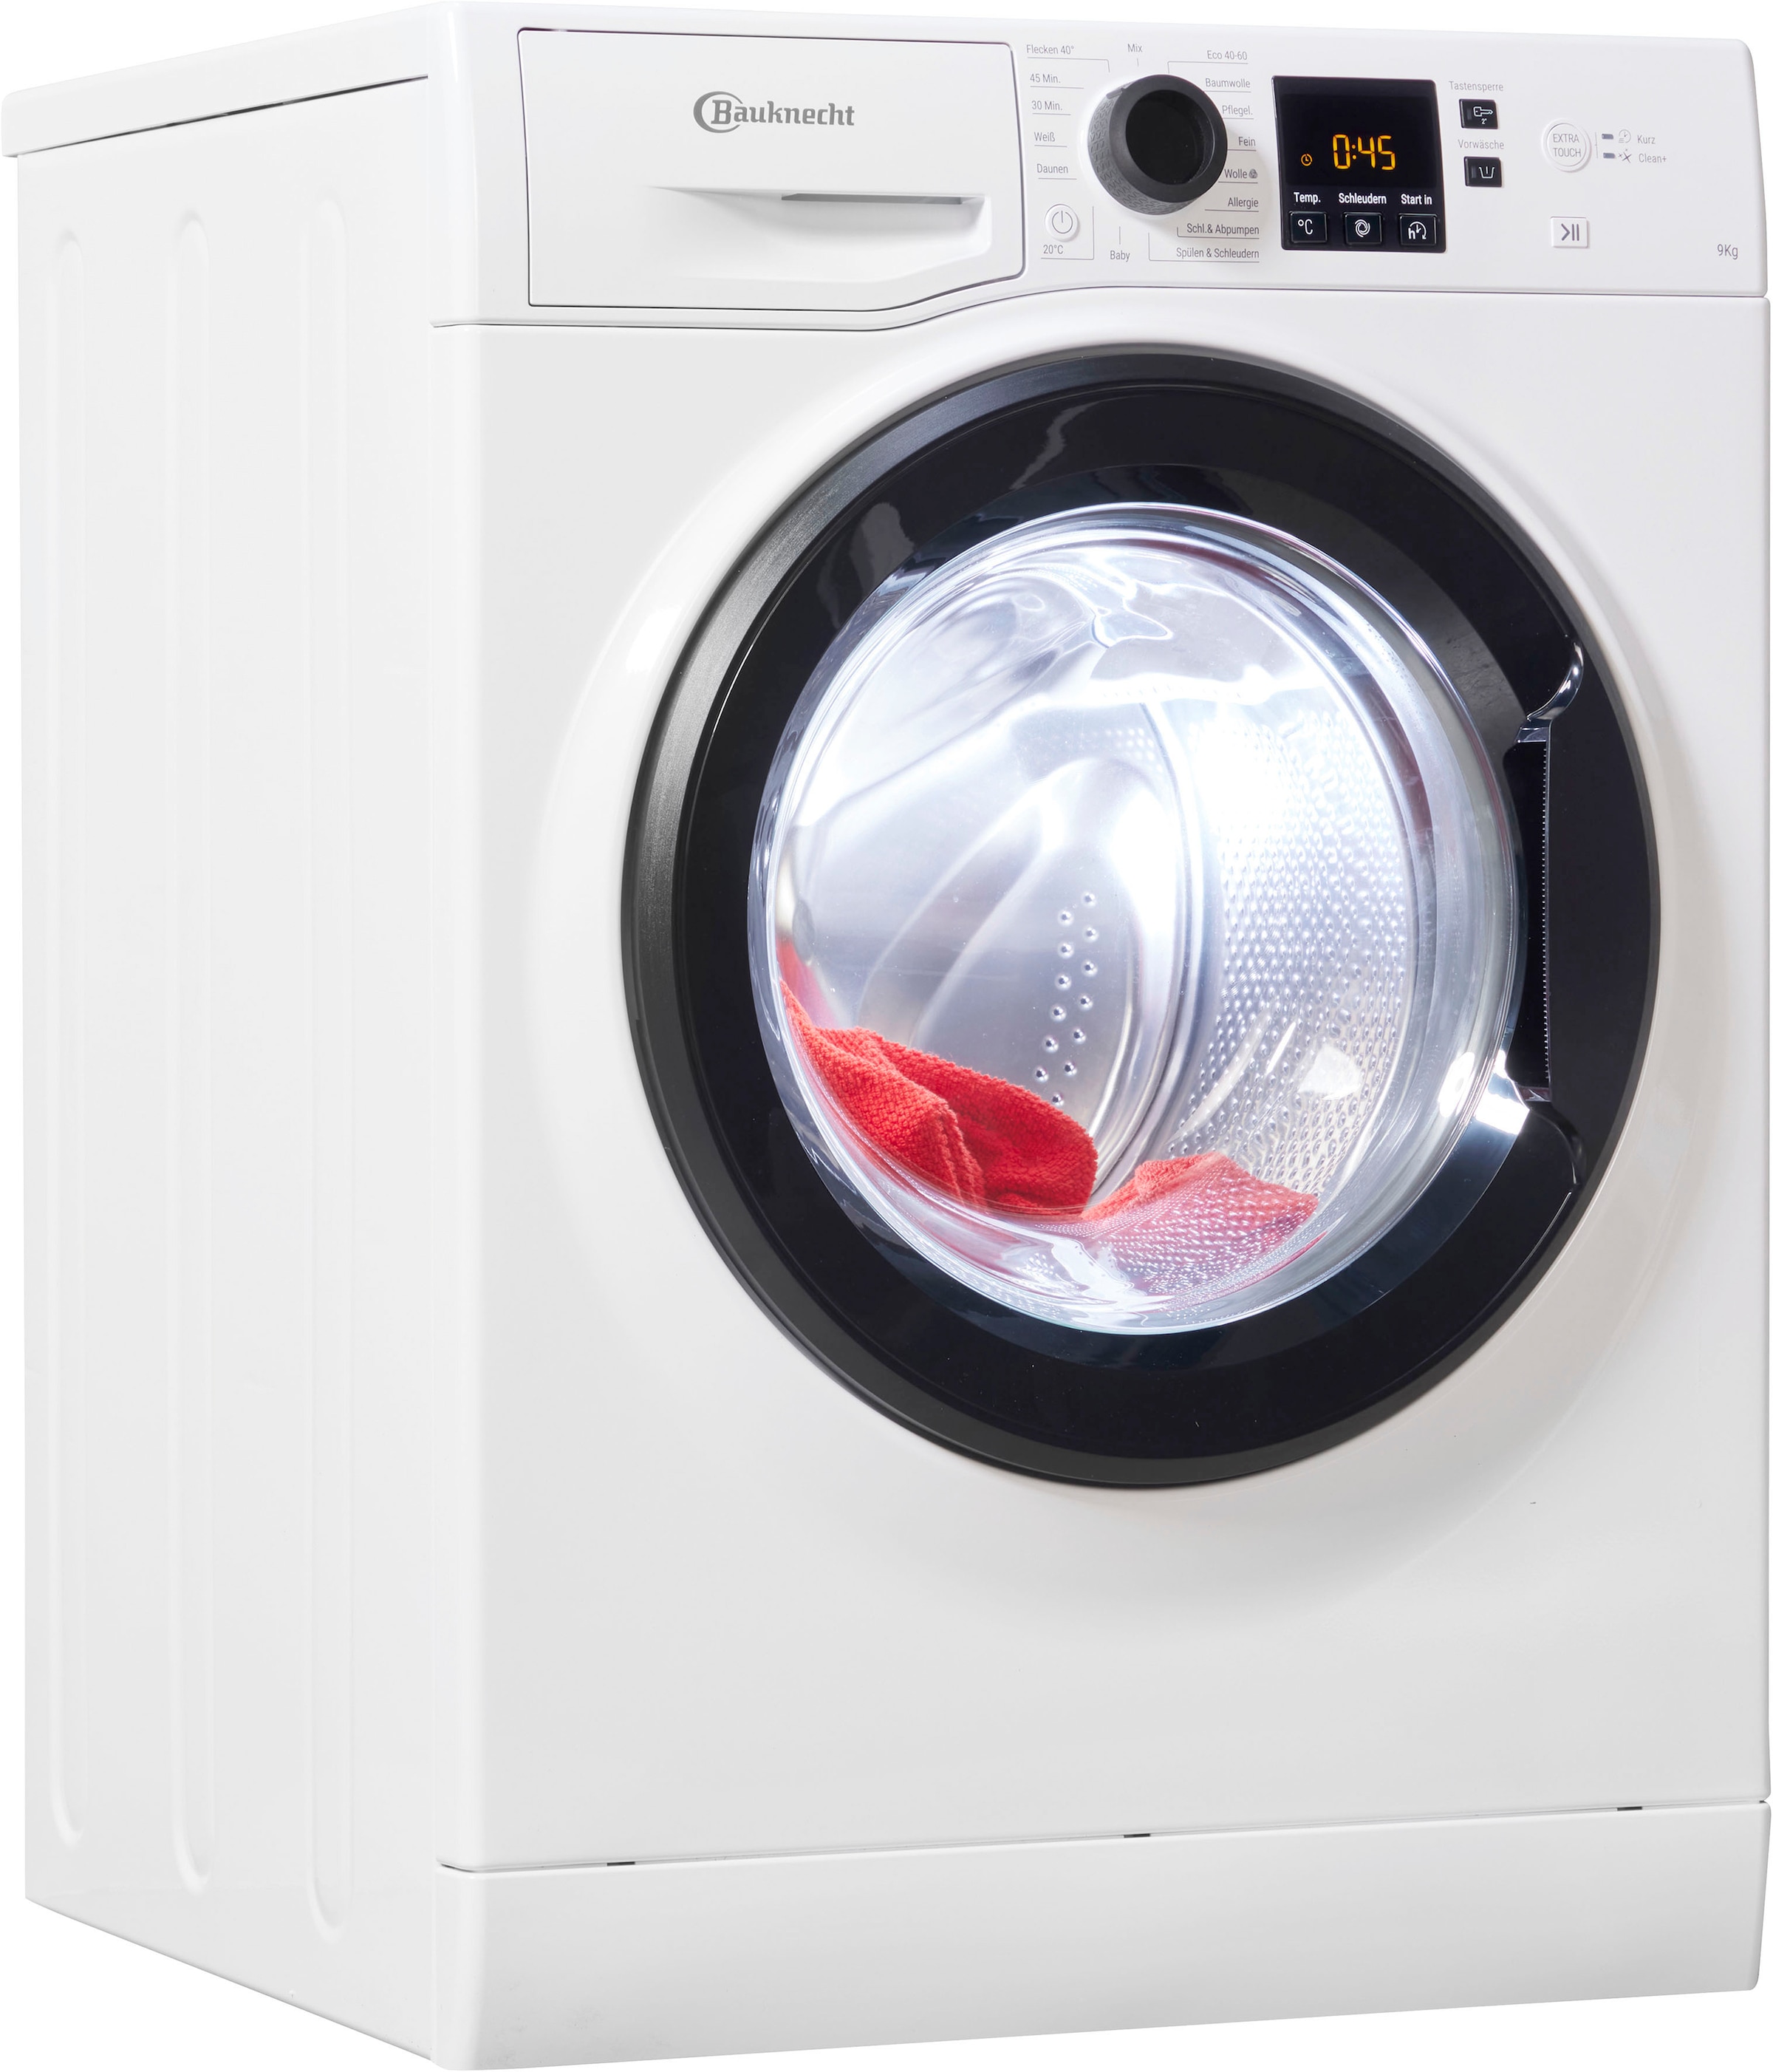 Bauknecht Waschmaschinen jetzt auf Teilzahlung bestellen ▻ Jeder sein hat Universal